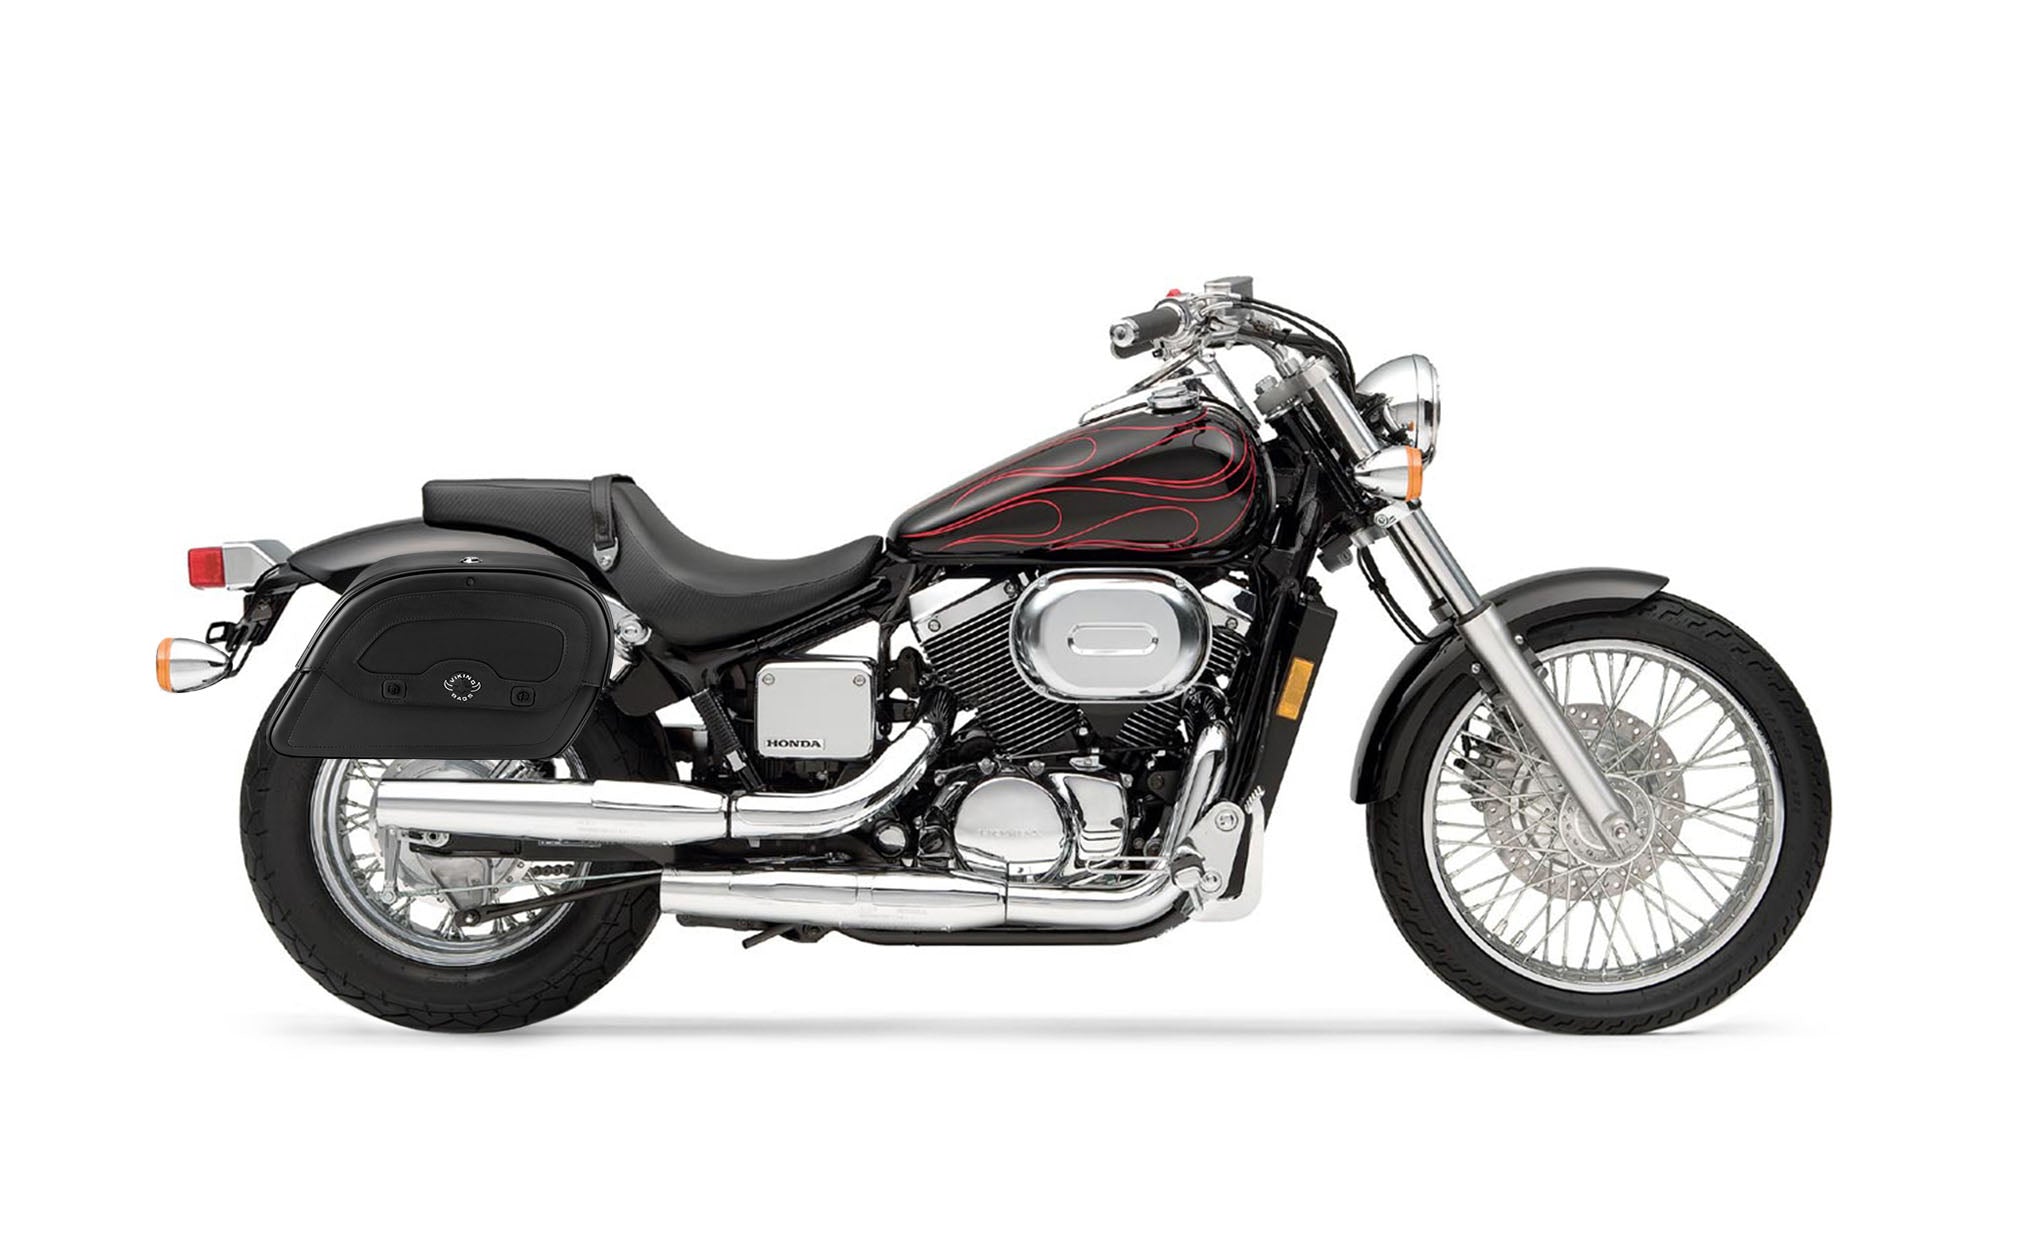 Viking Warrior Medium Honda Shadow 750 Spirit Dc Leather Motorcycle Saddlebags on Bike Photo @expand